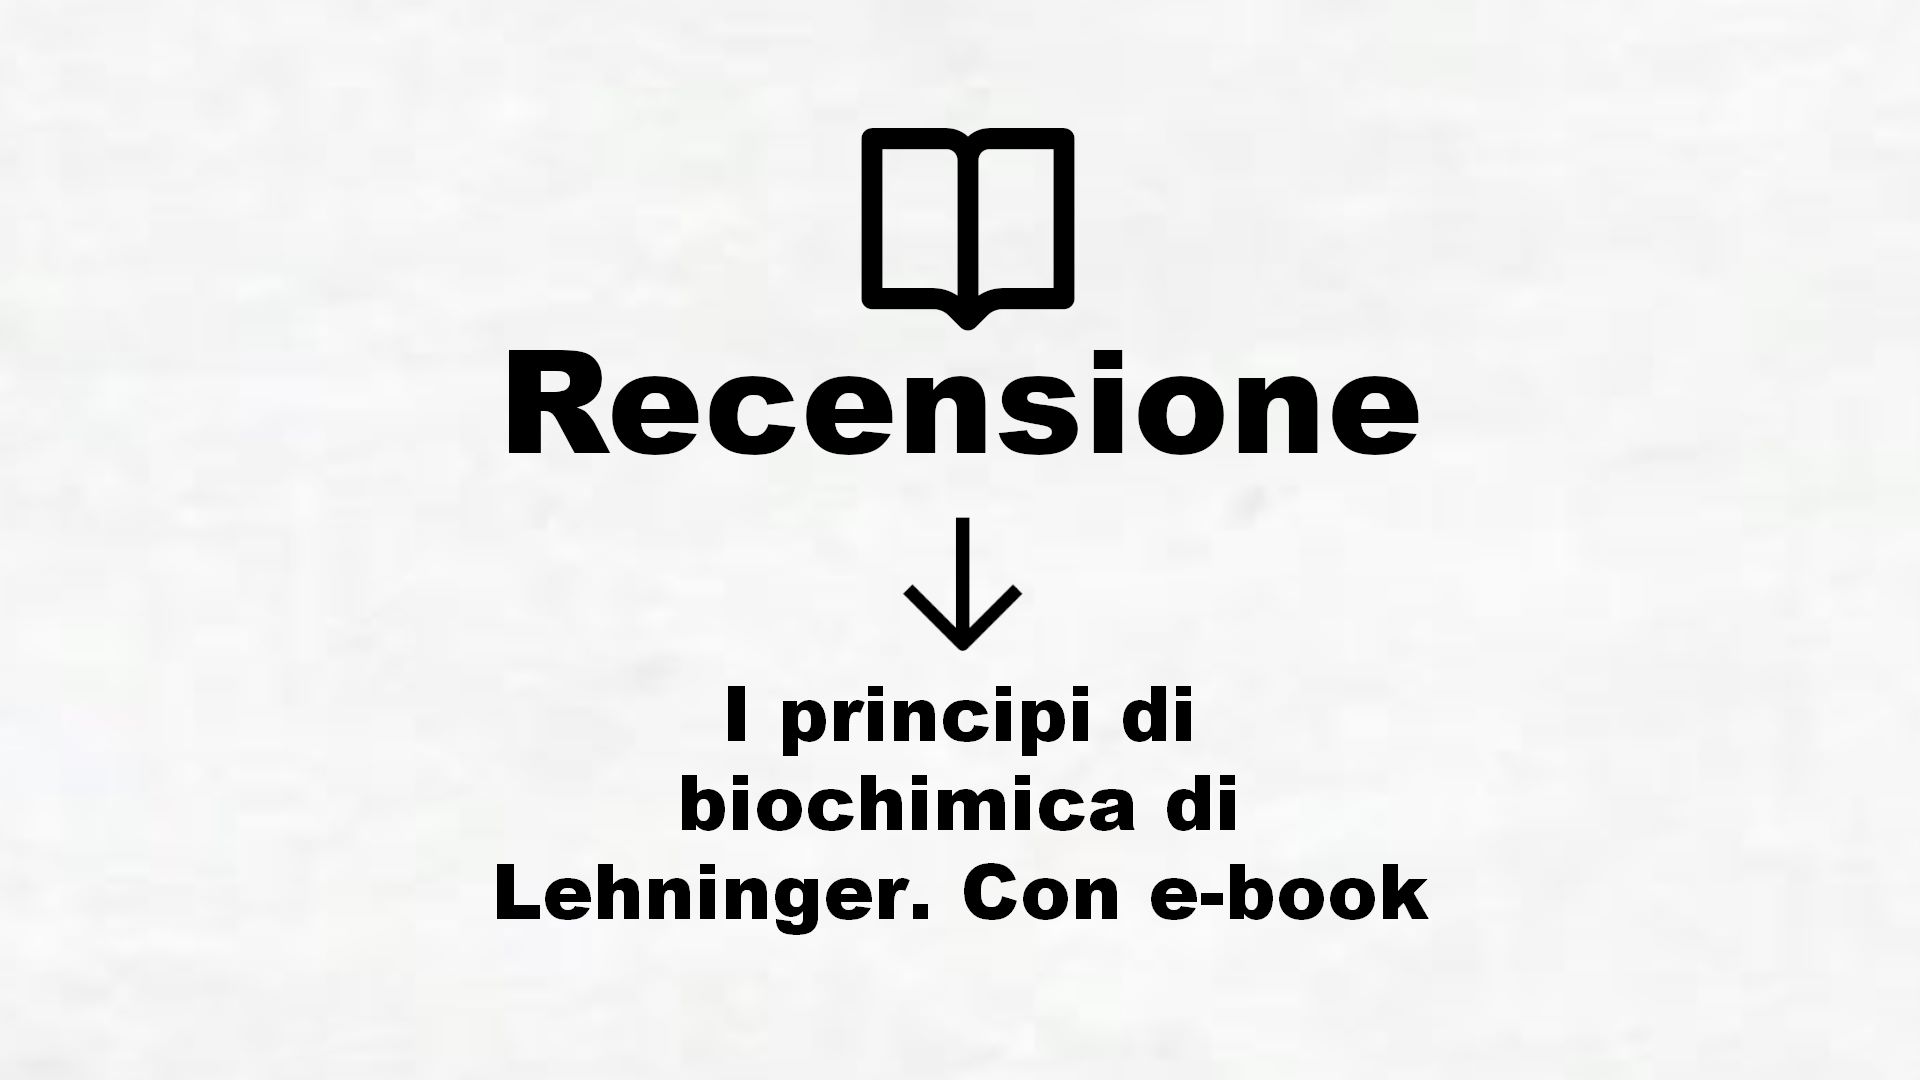 I principi di biochimica di Lehninger. Con e-book – Recensione Libro